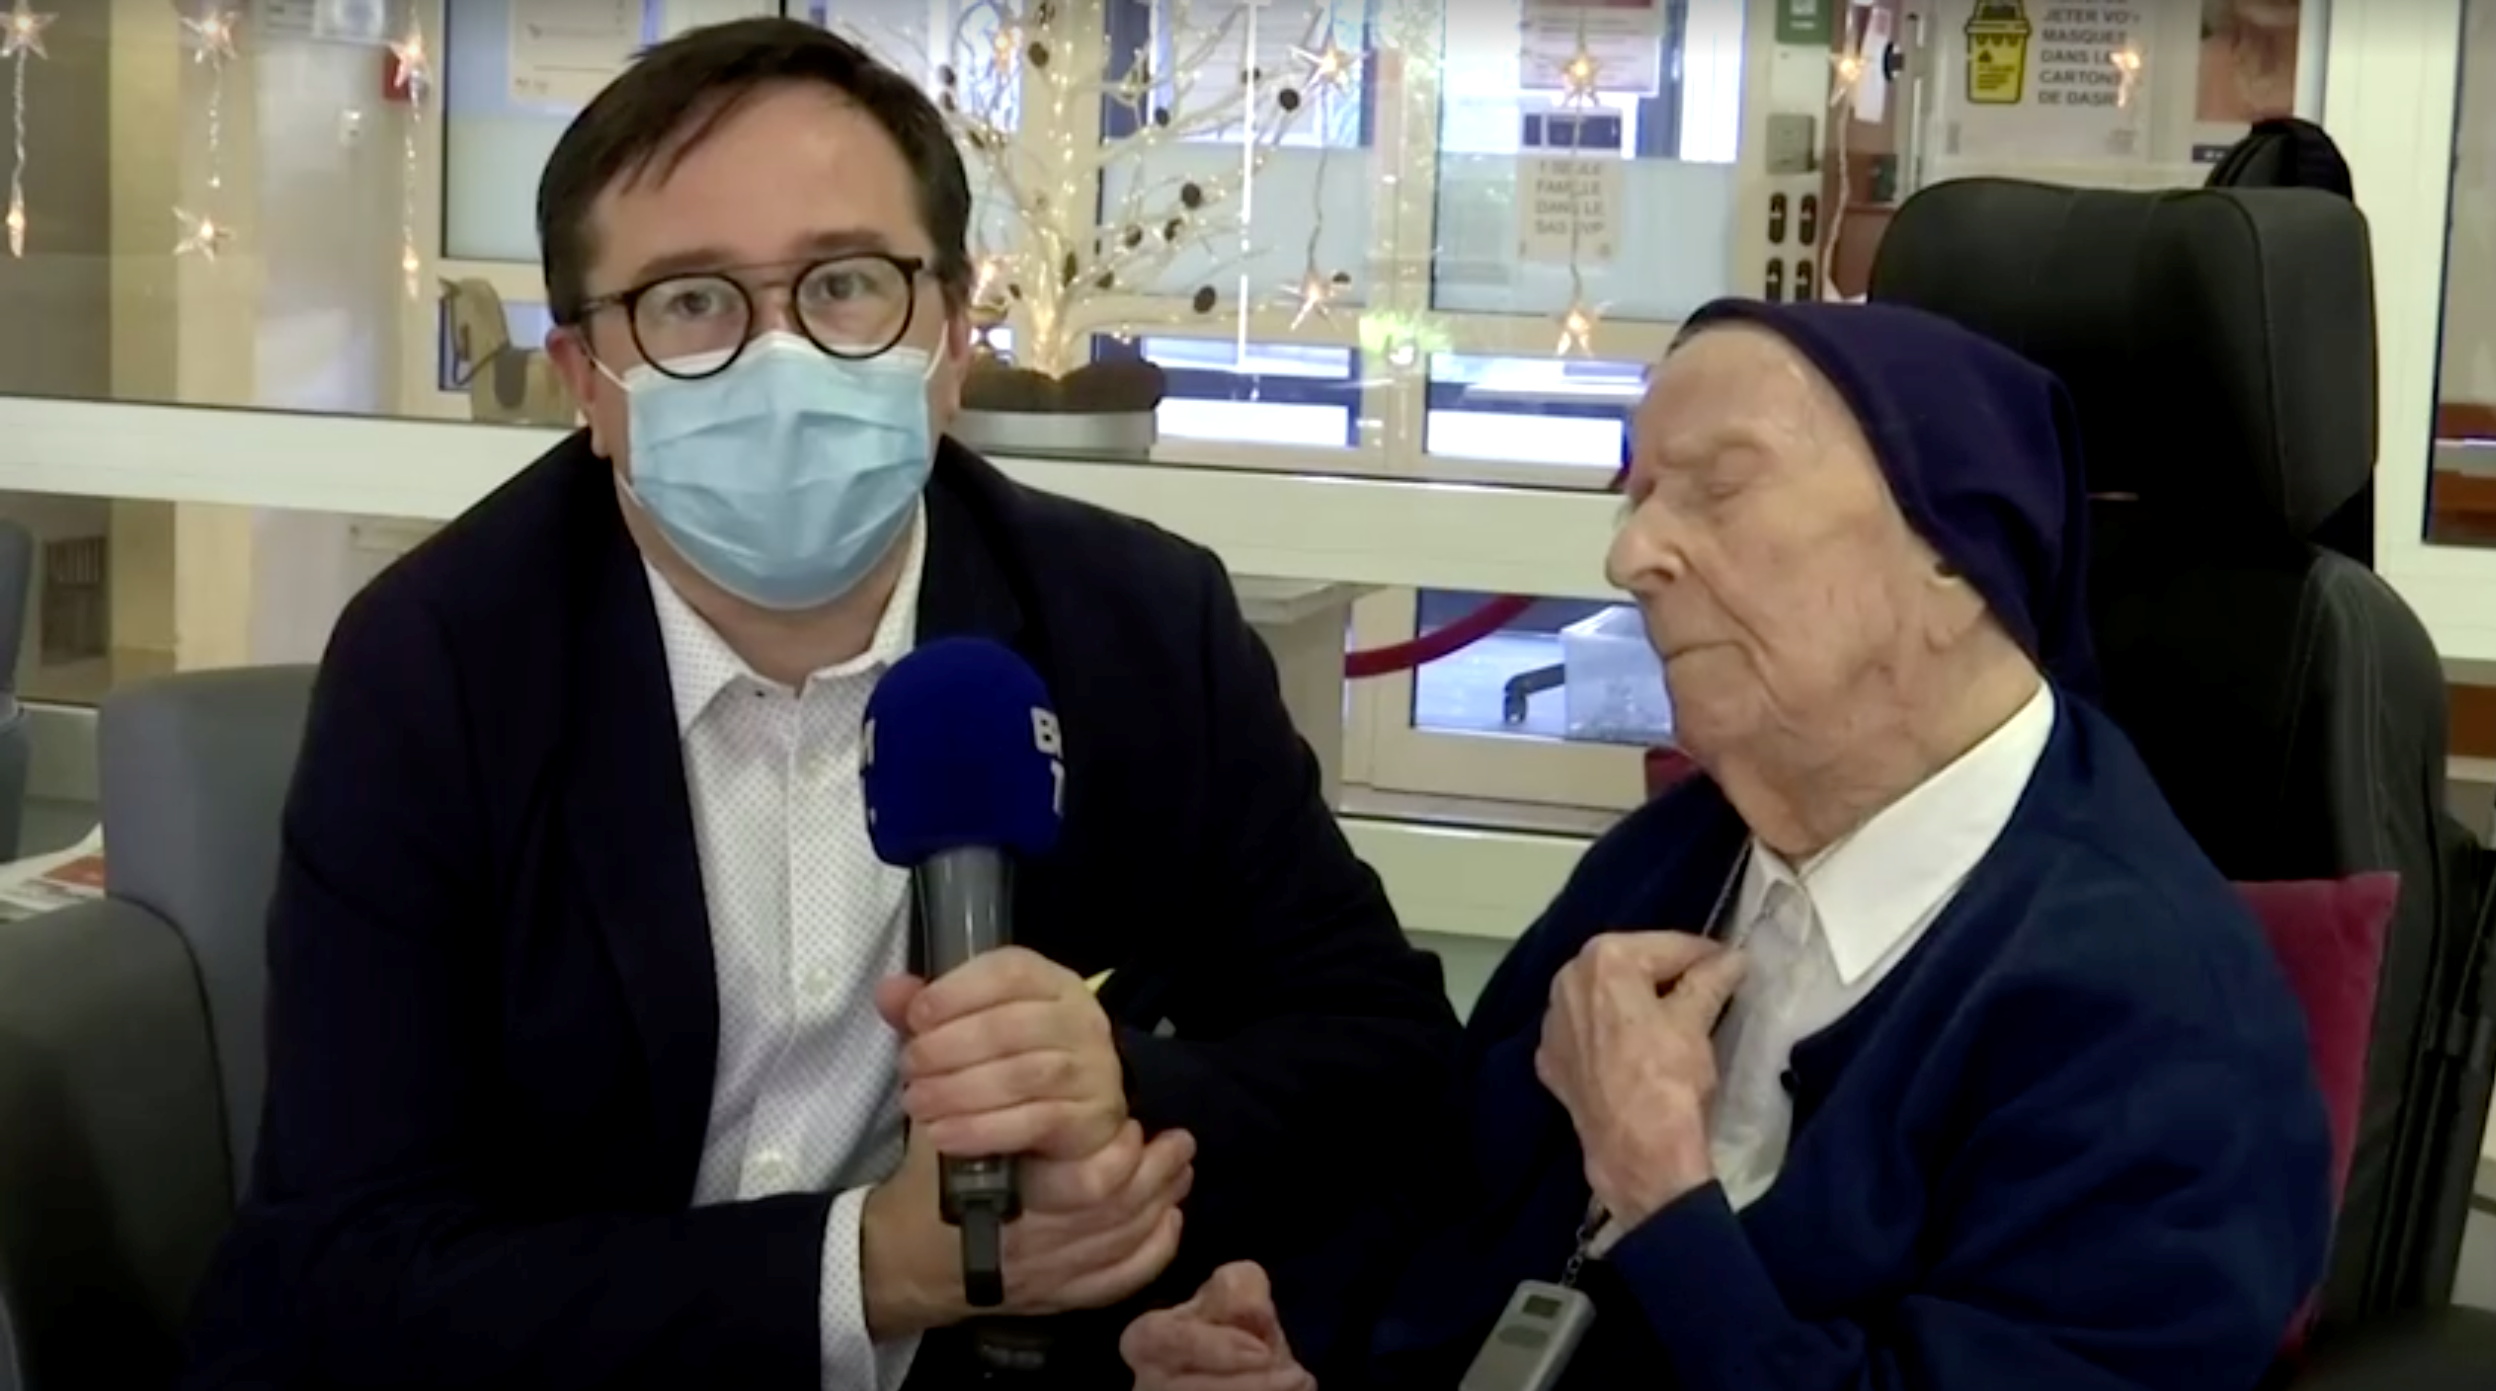 La persona más longeva de Europa, la monja Lucile Randon, también conocida como Hermana Andre, que sobrevivió a la enfermedad del coronavirus (COVID-19), fue entrevistada en Toulon, Francia, el 9 de febrero de 2021. Reuters TV. BFMTV/Reuters TV via REUTERS 